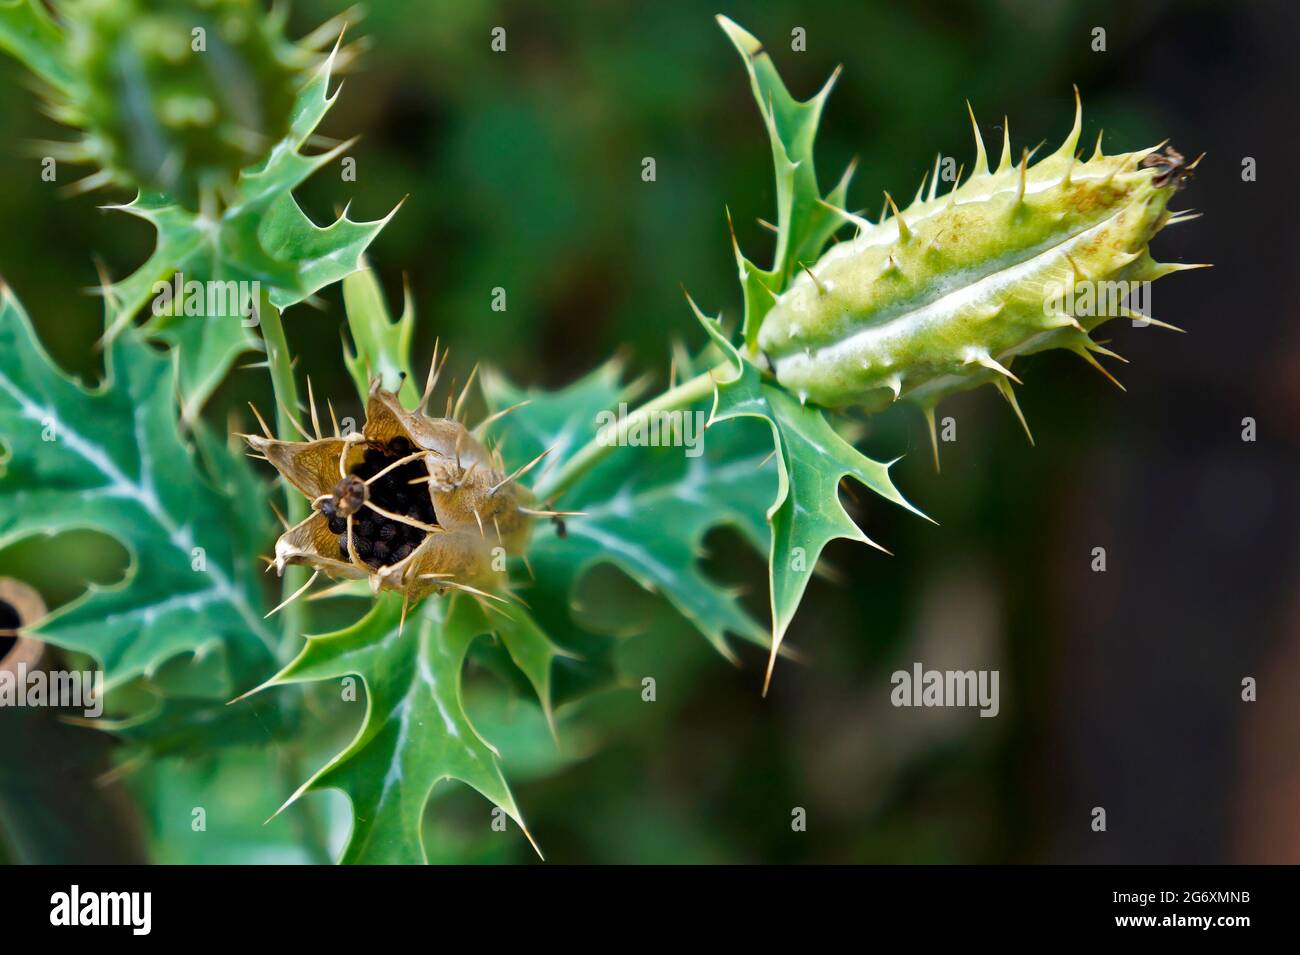 Planta medicinal, fruta y semillas de adormidera mexicana (Argemone mexicana) Foto de stock